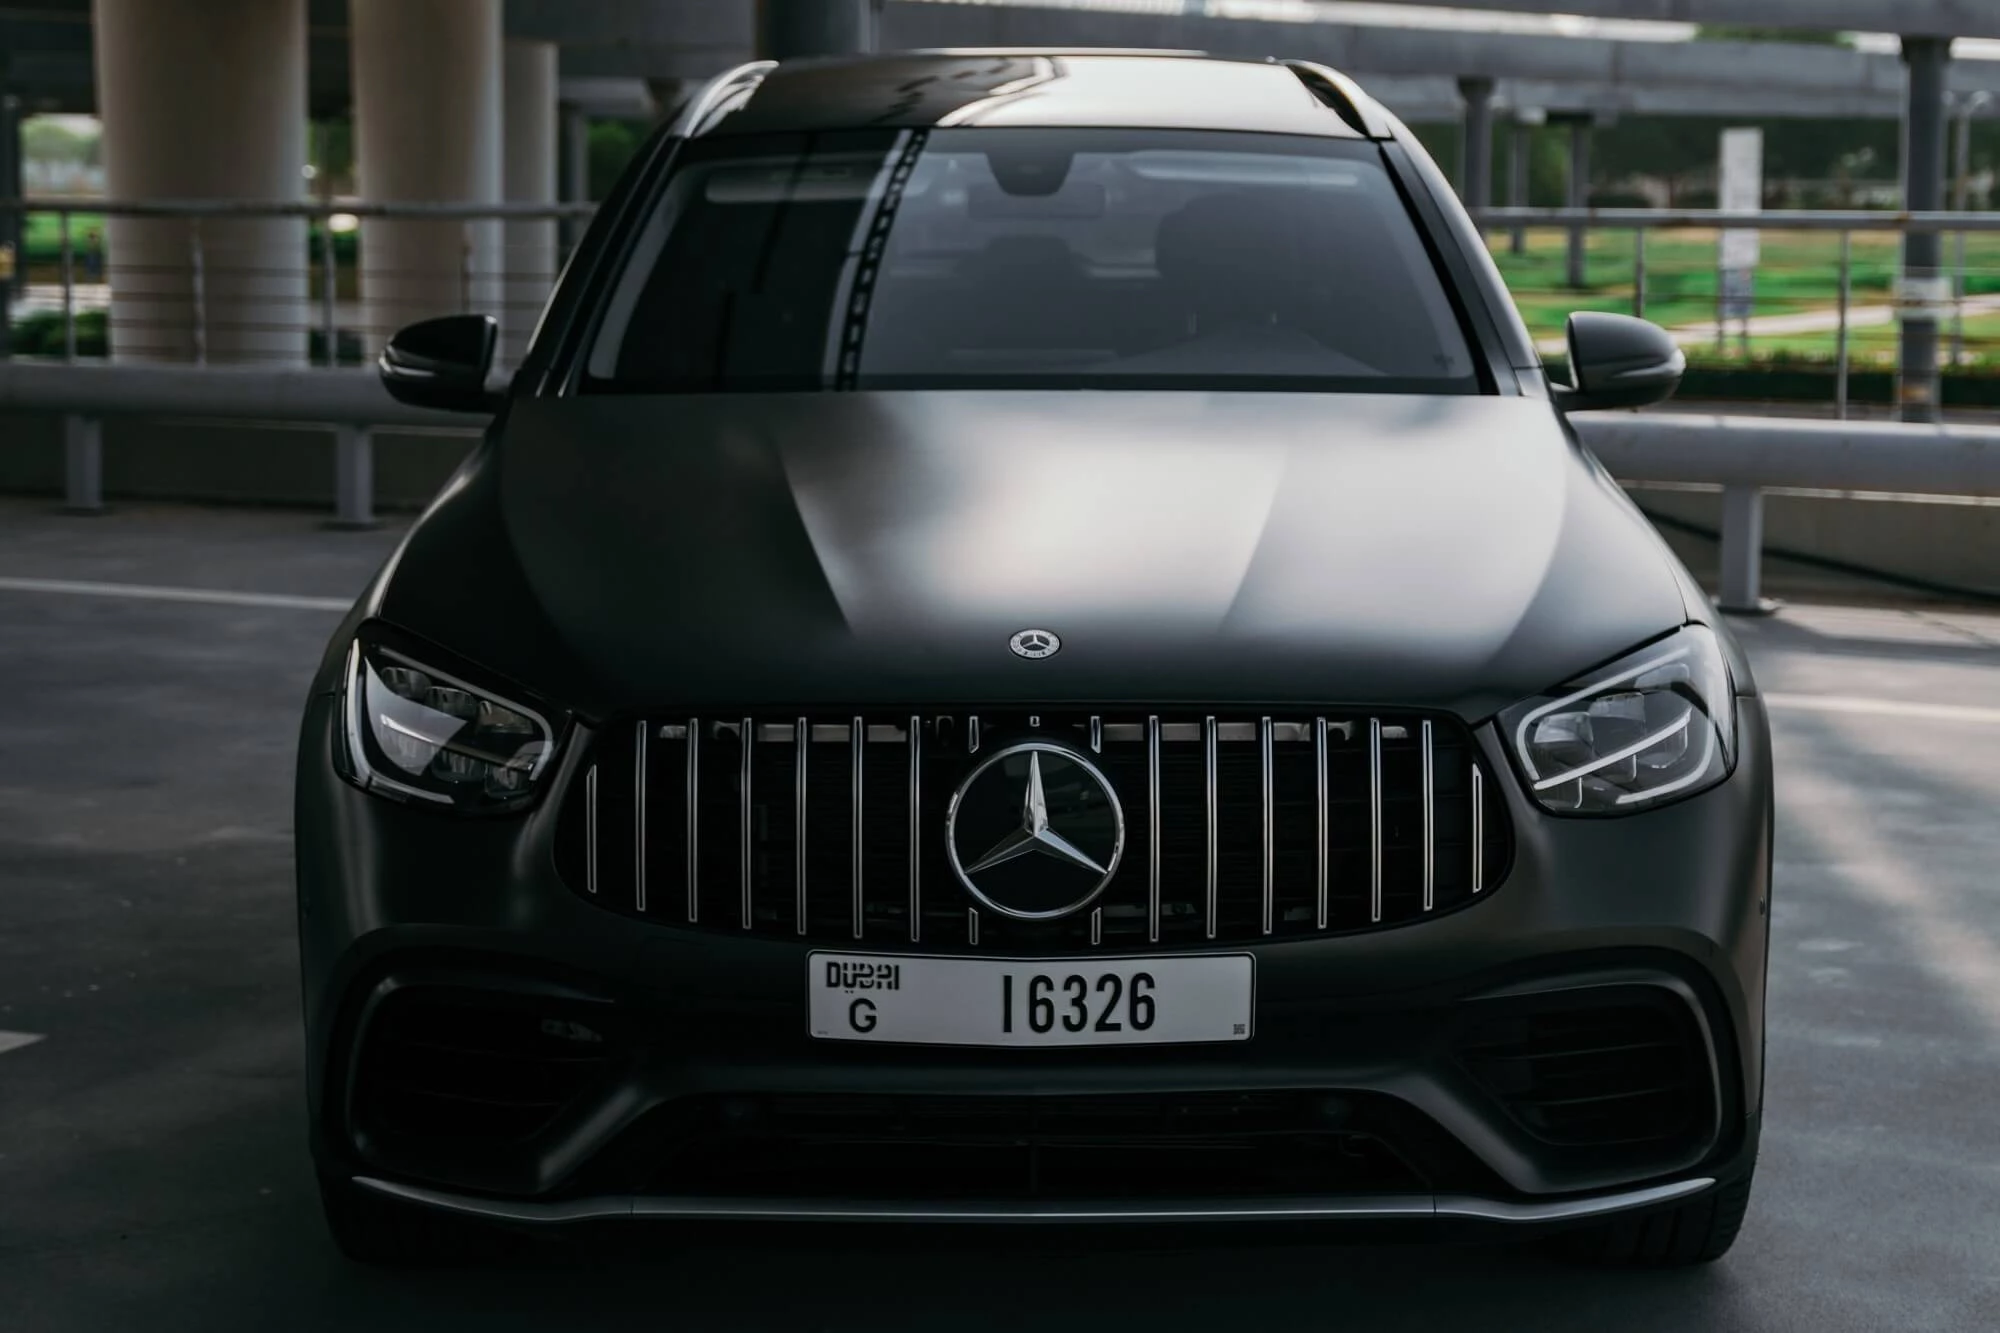 Mercedes Benz GLC Noir mat